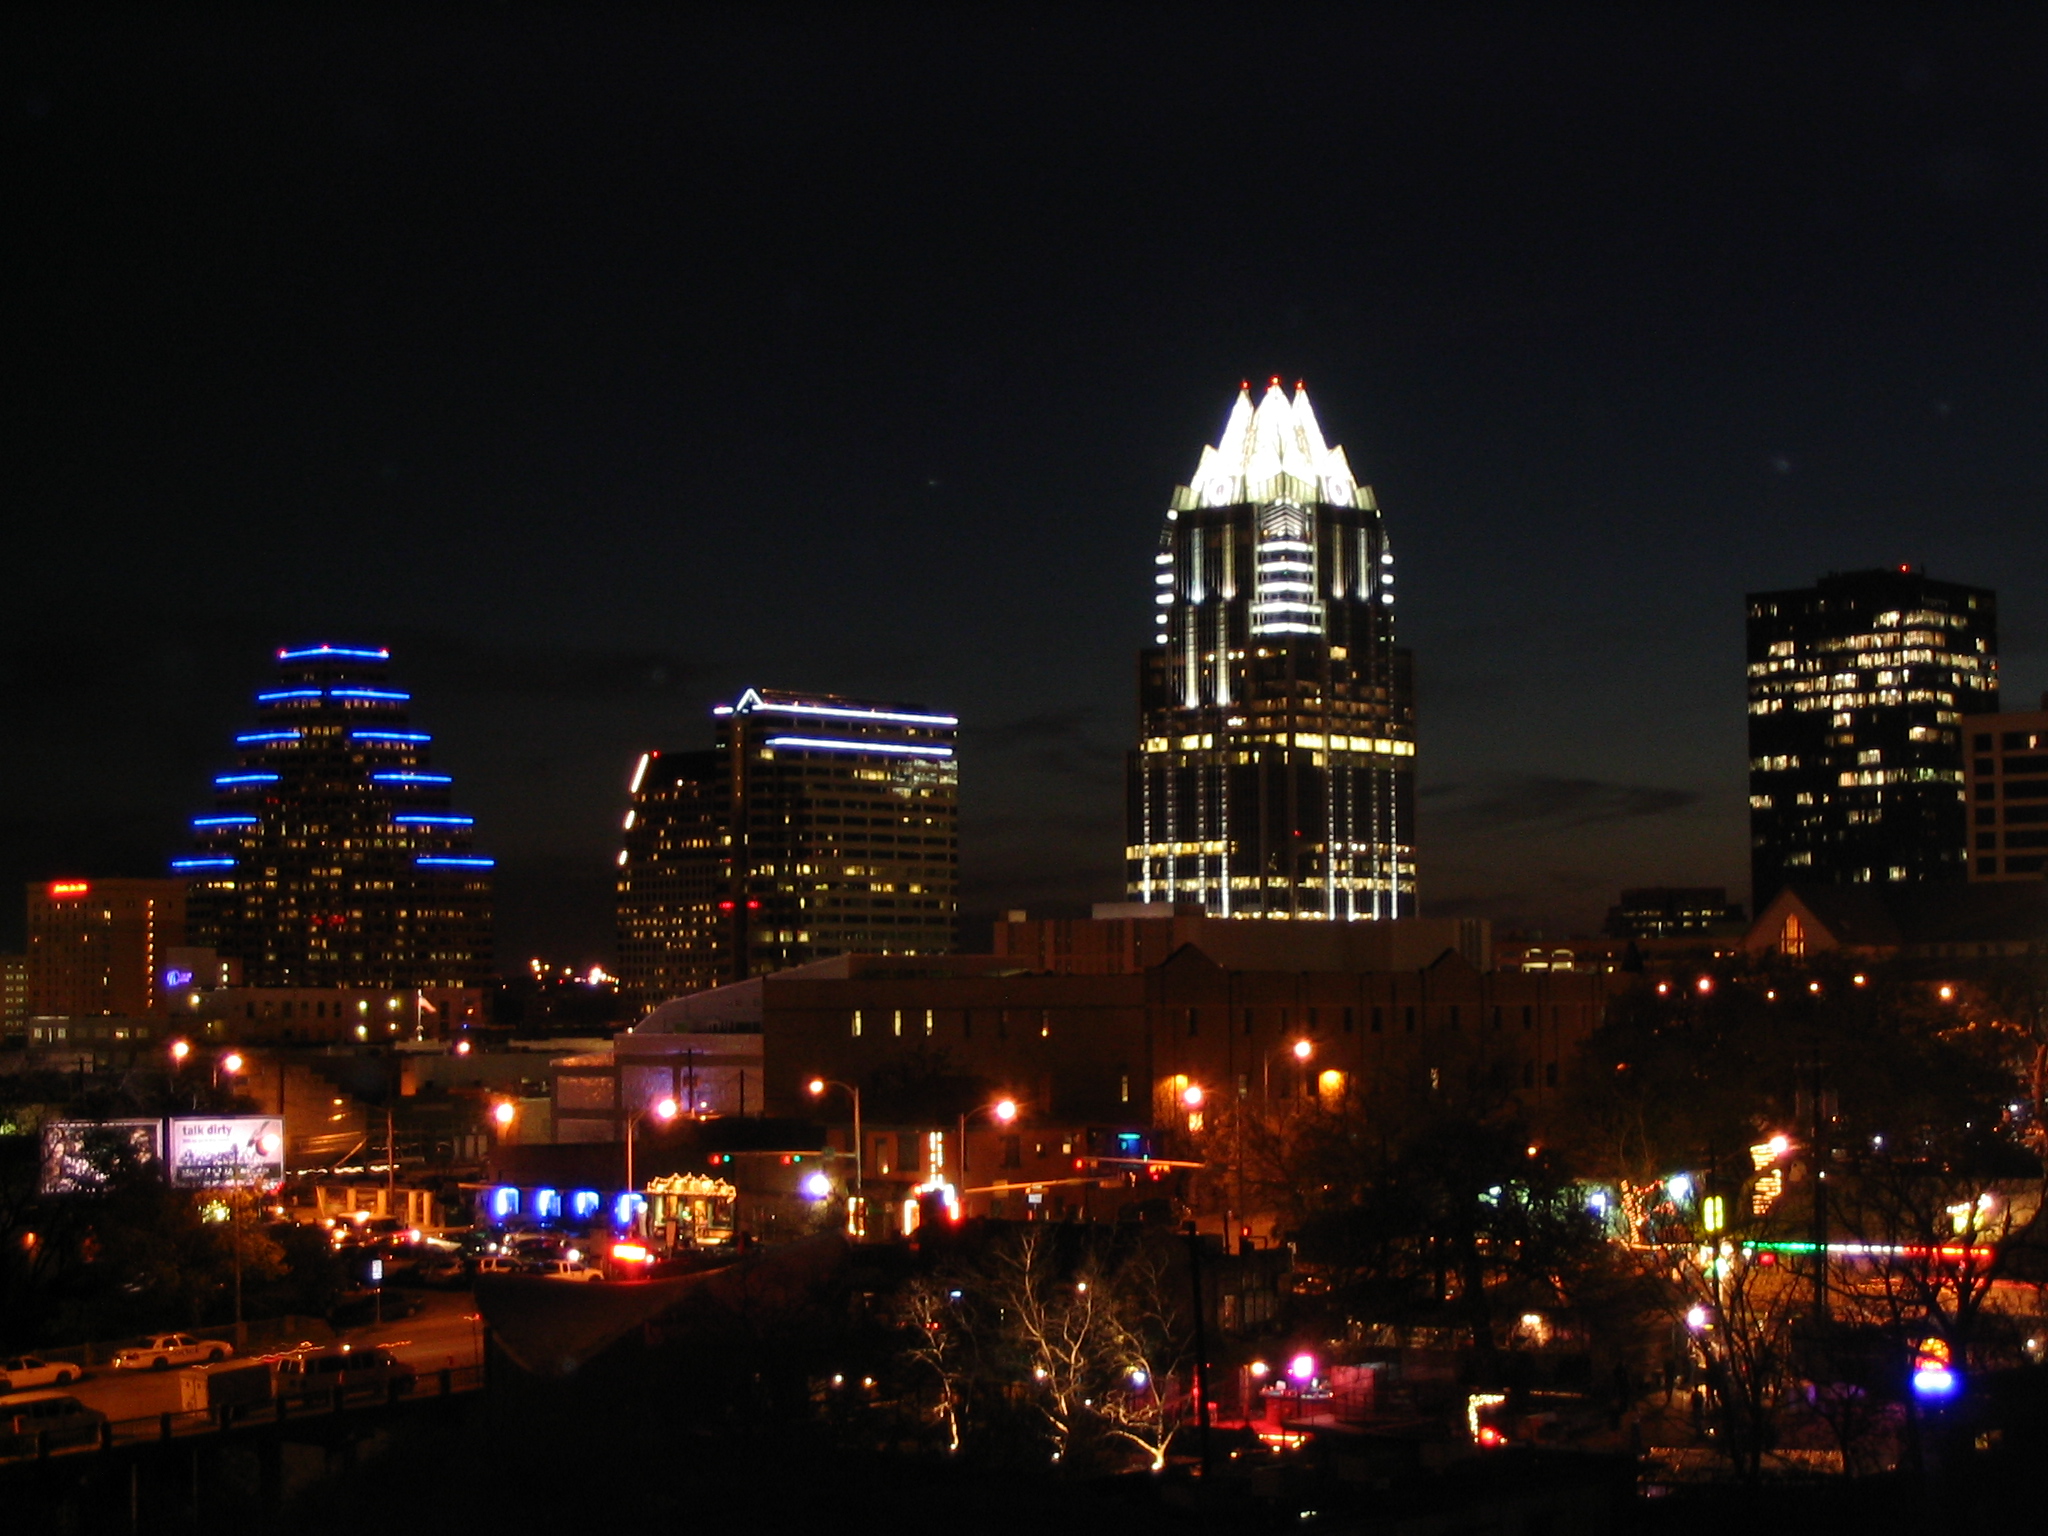 Austin Texas at Night by Ken Lund